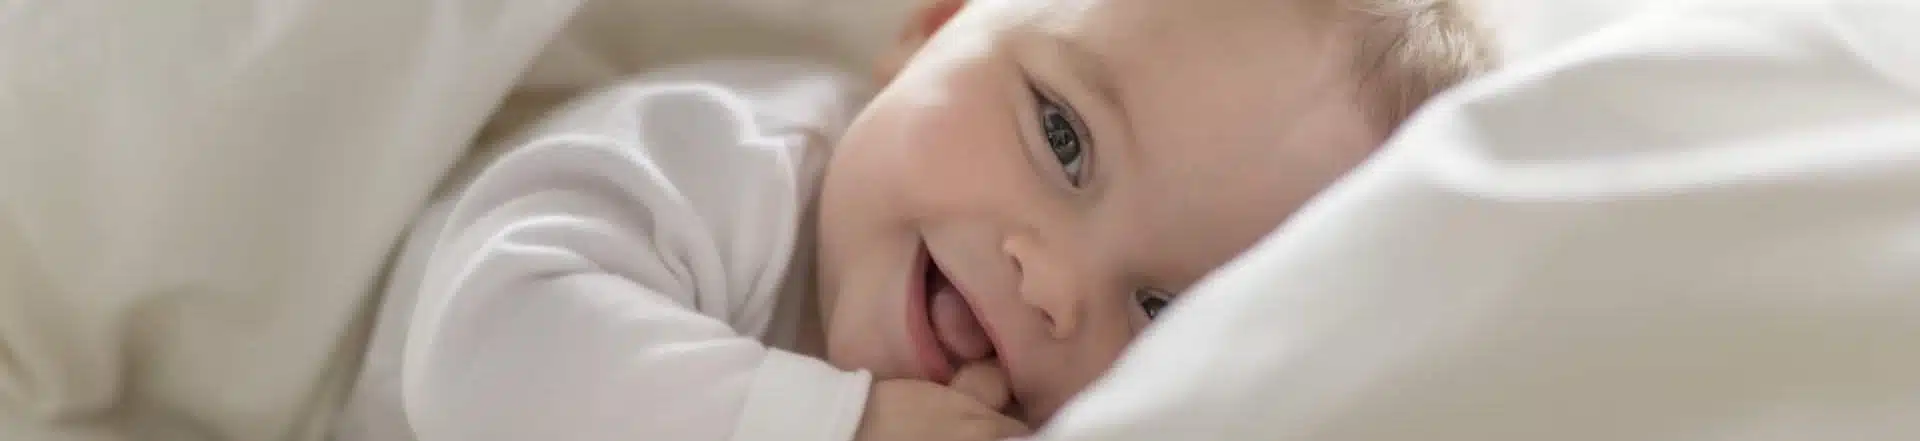 תינוק מחייך במיטה